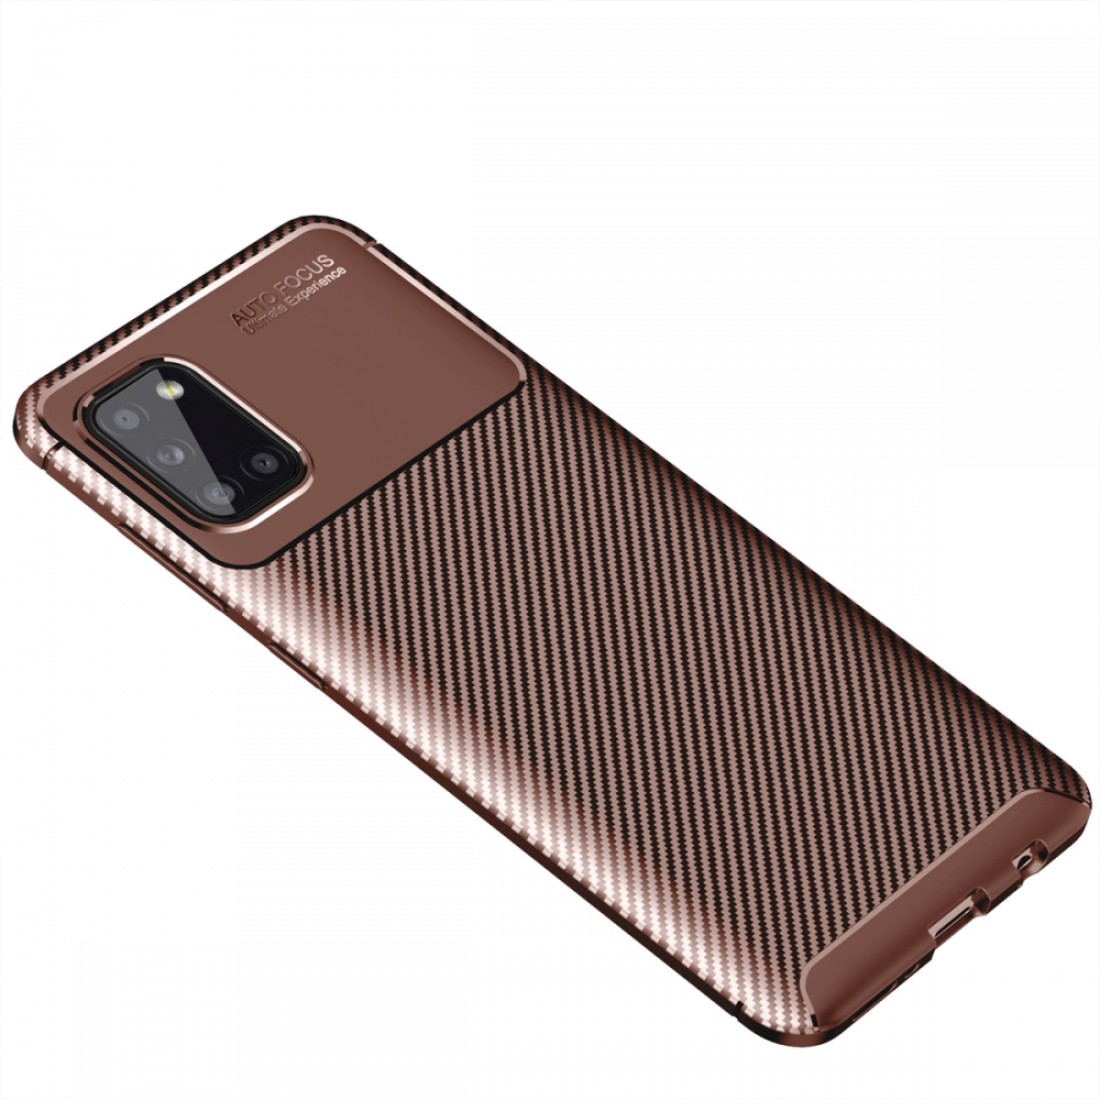 Samsung Galaxy A31 Kılıf Focus Karbon Silikon - Kahverengi